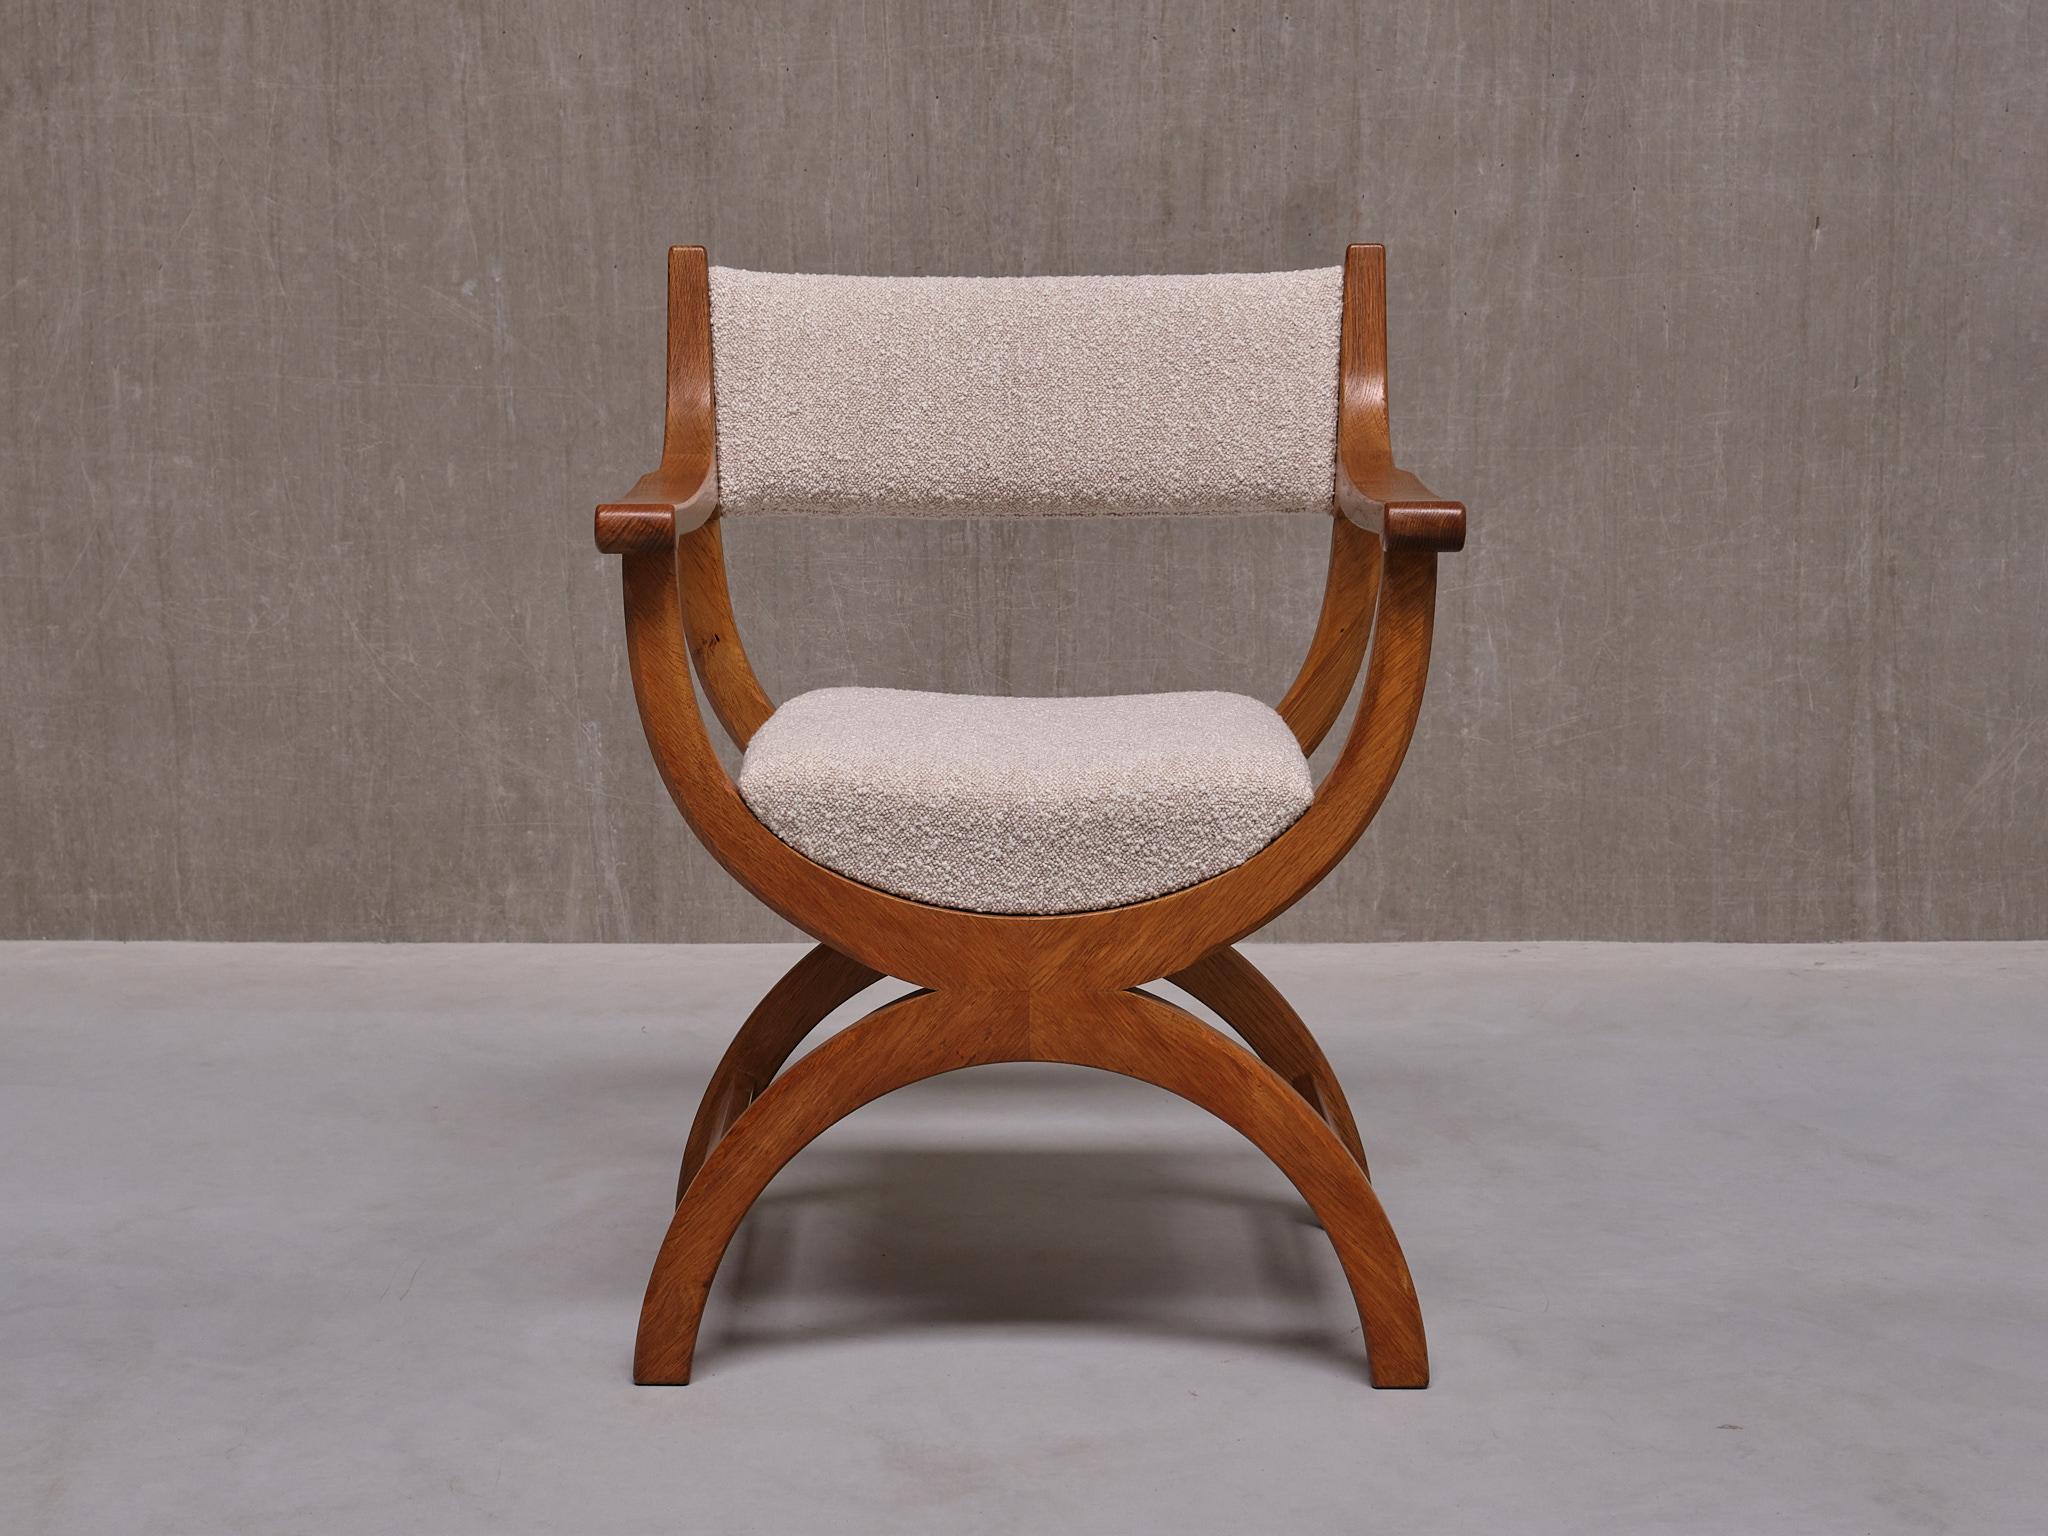 Dieser markante Sessel wurde von Henning (Henry) Kjærnulf in den 1960er Jahren entworfen. Dieses besondere Modell mit dem Namen 